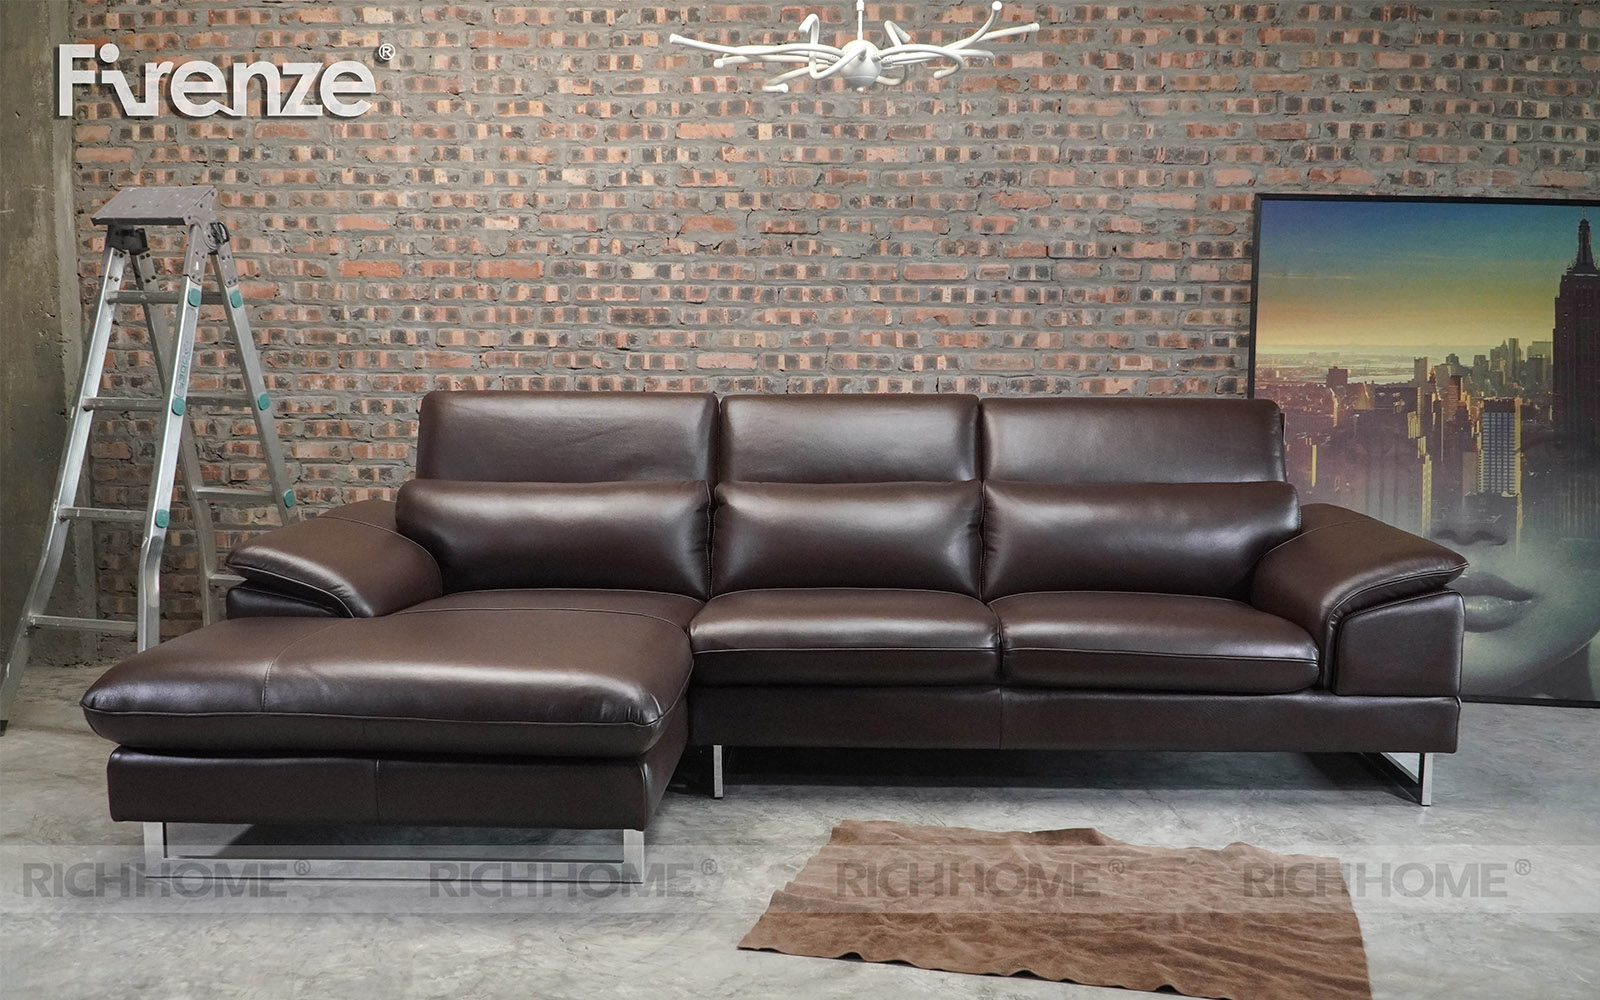 15 mẫu bàn ghế sofa phòng khách nhập khẩu đáng mua nhất - Ảnh 7